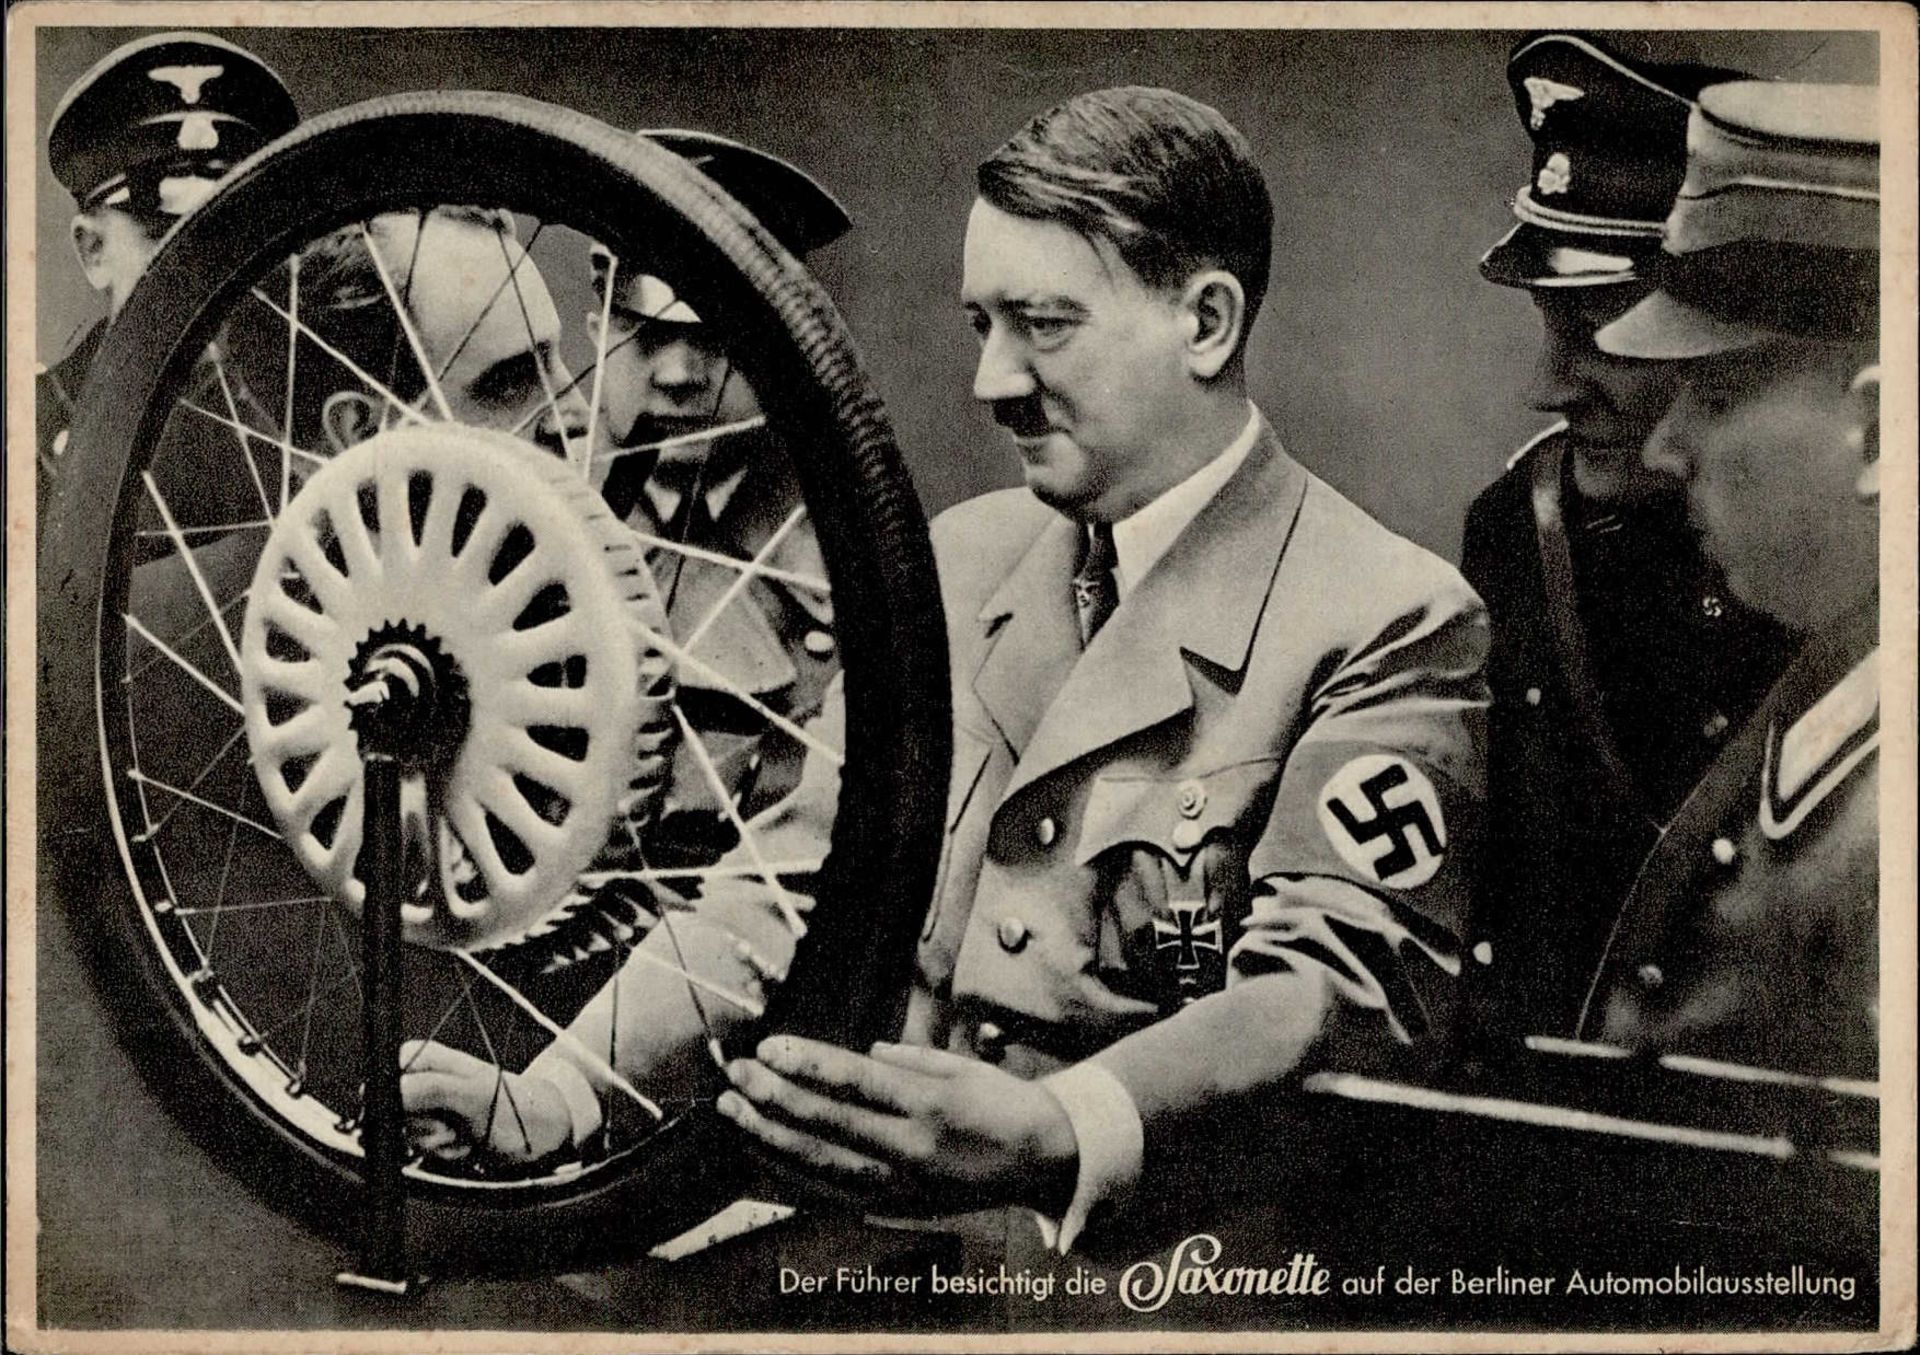 Hitler auf der Berliner Automobilausstellung mit Saxonette I-II